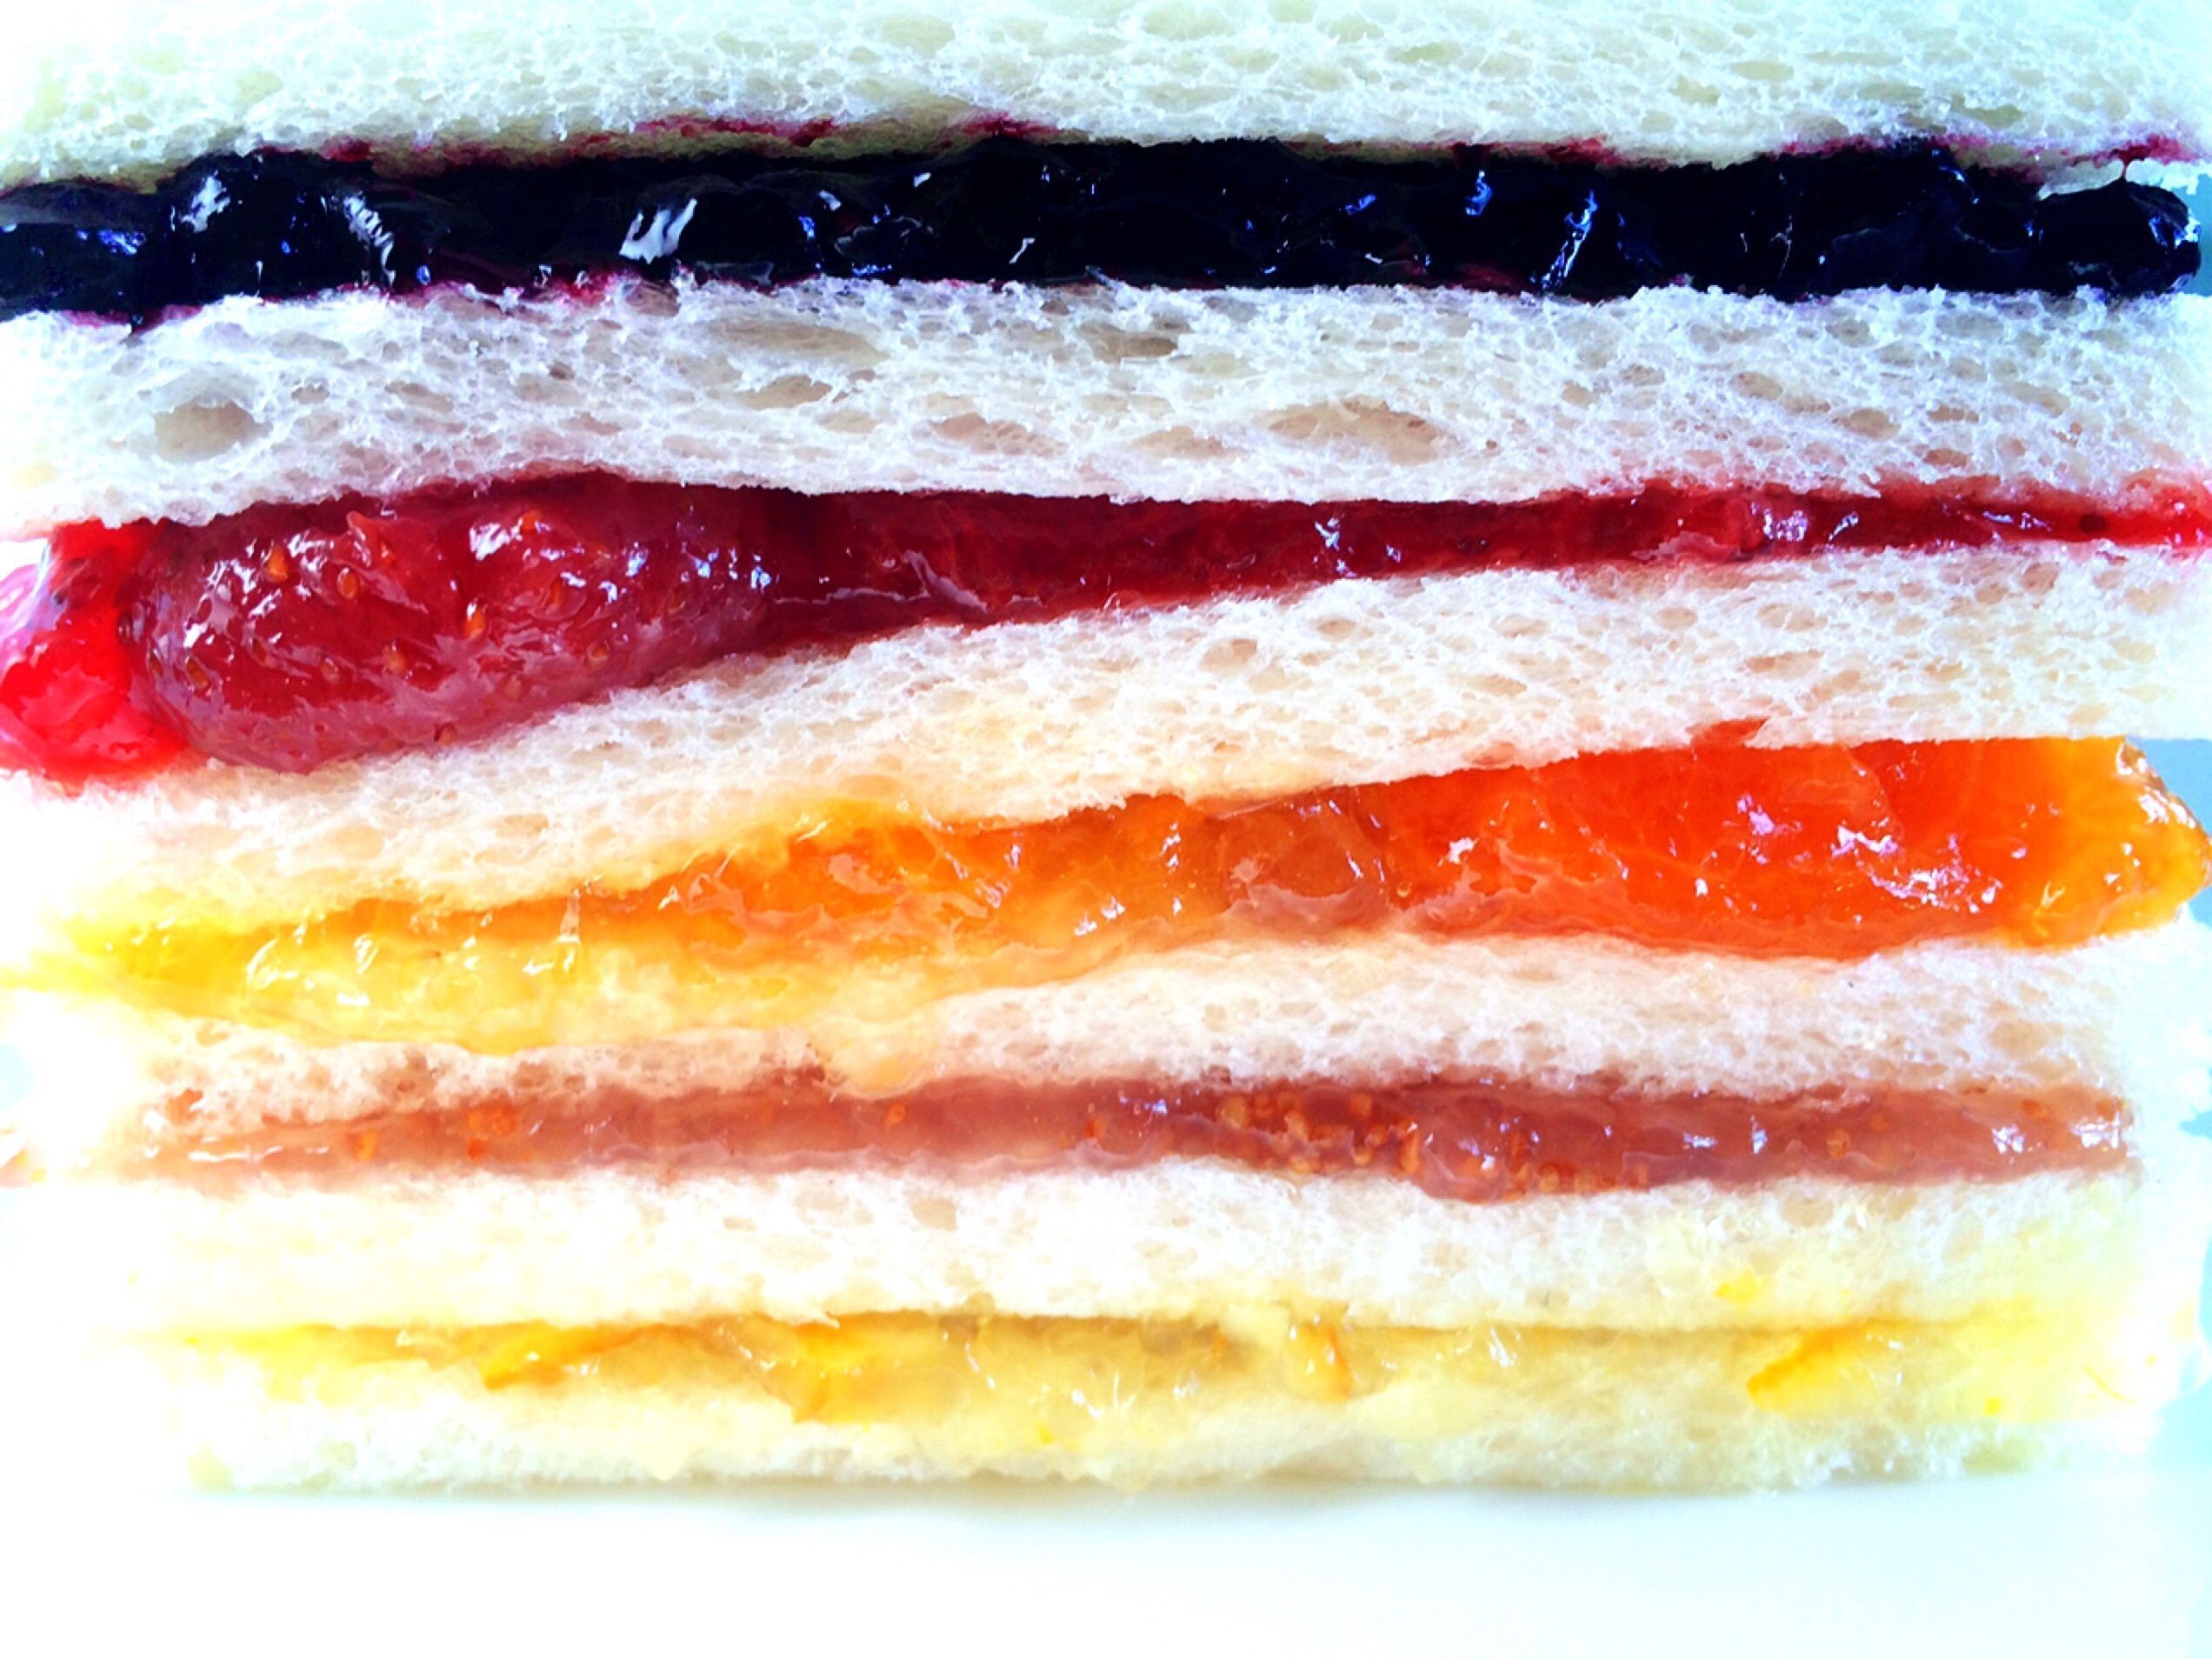 サンドイッチ用のパンにテーブルナイフなどでジャムをきれいに塗り、重ねていきます